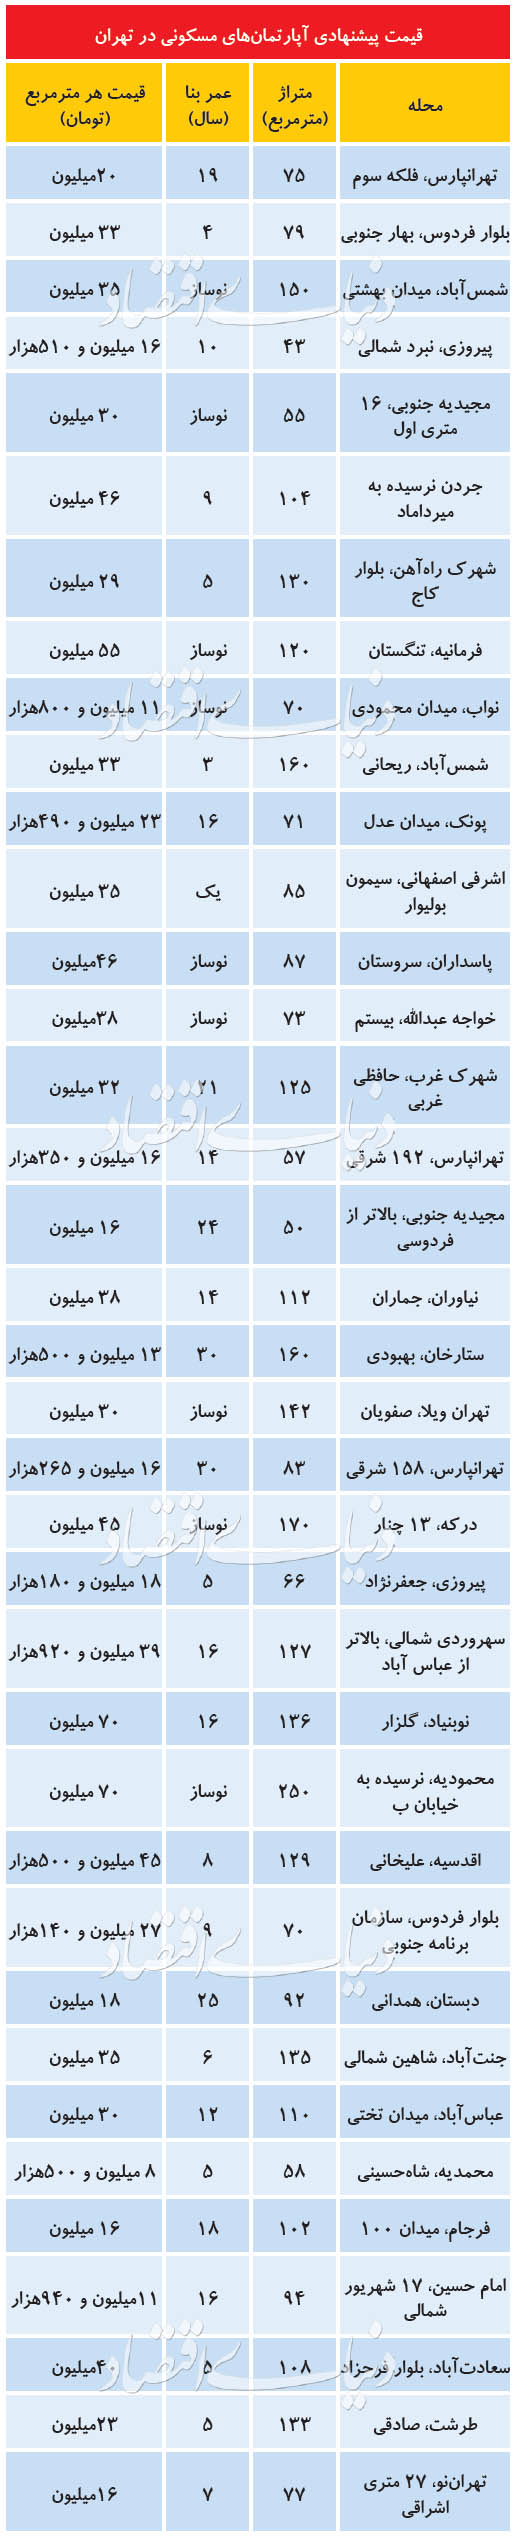 قیمت خرید خانه و نرخ اجاره مسکن در تهران امروز ۱۴ تیر ۹۹